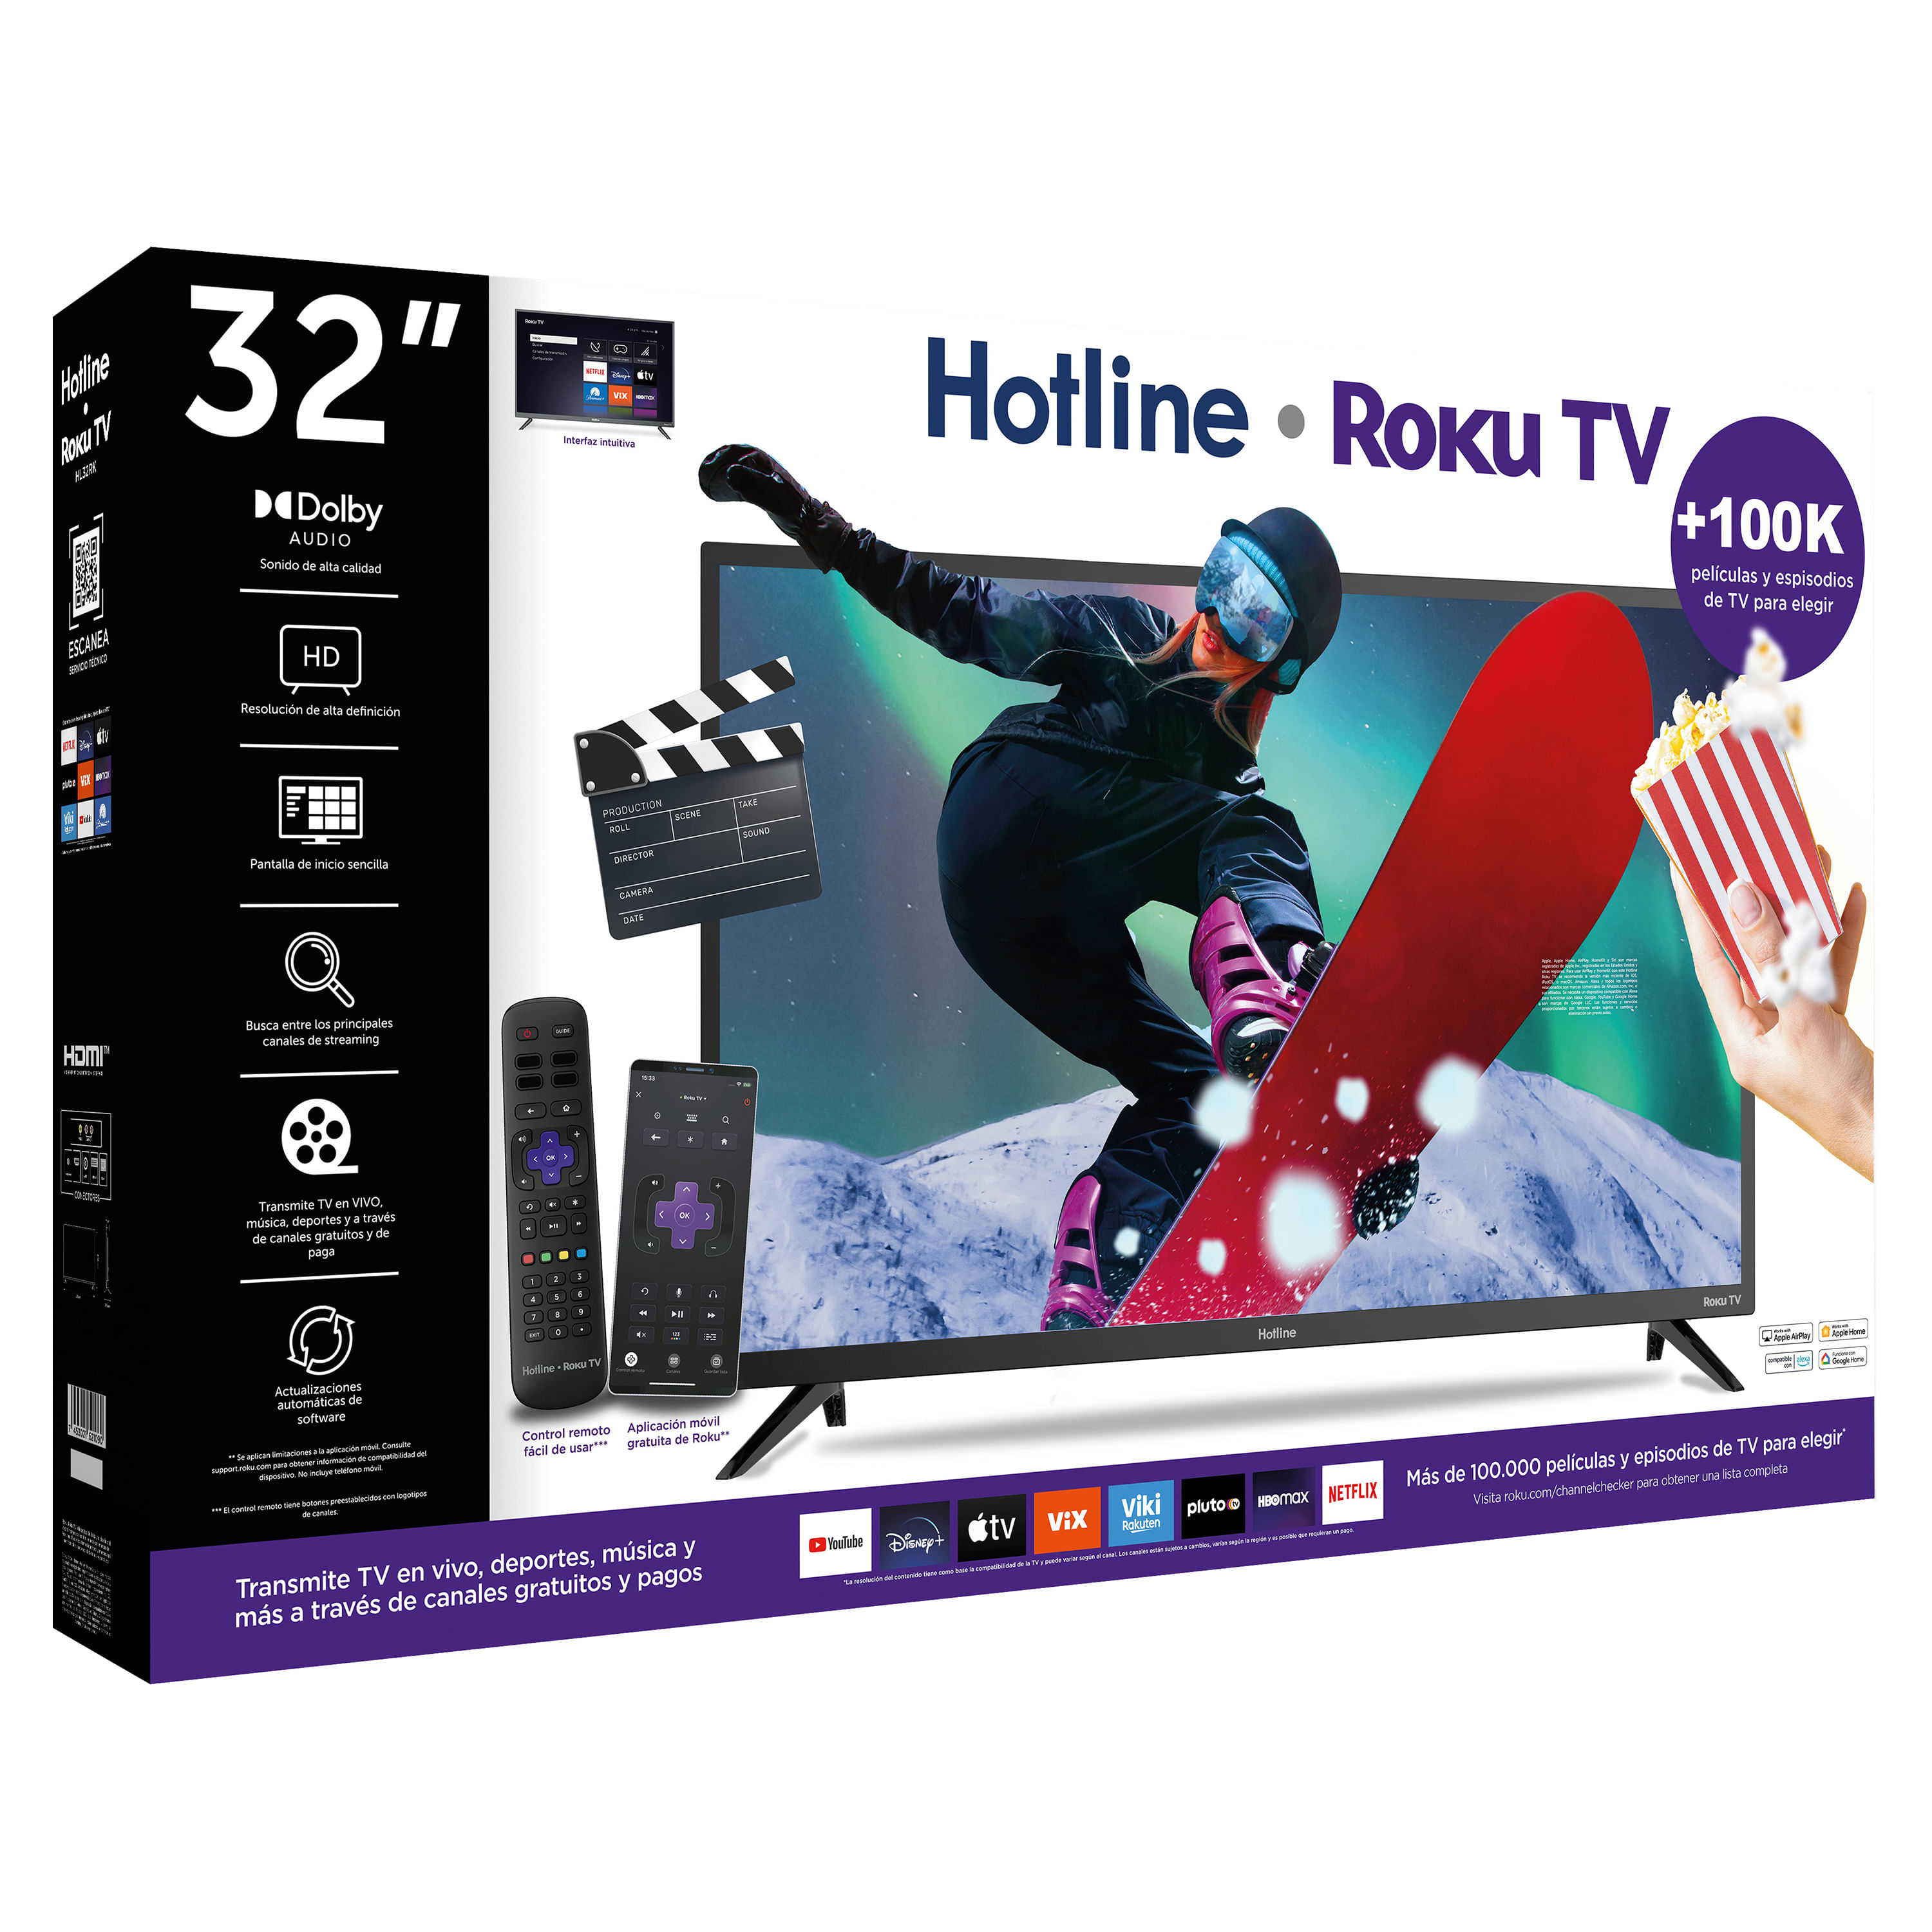 Comprar Televisor Hotline smart TV, Roku, HL32RK -32 pulgadas